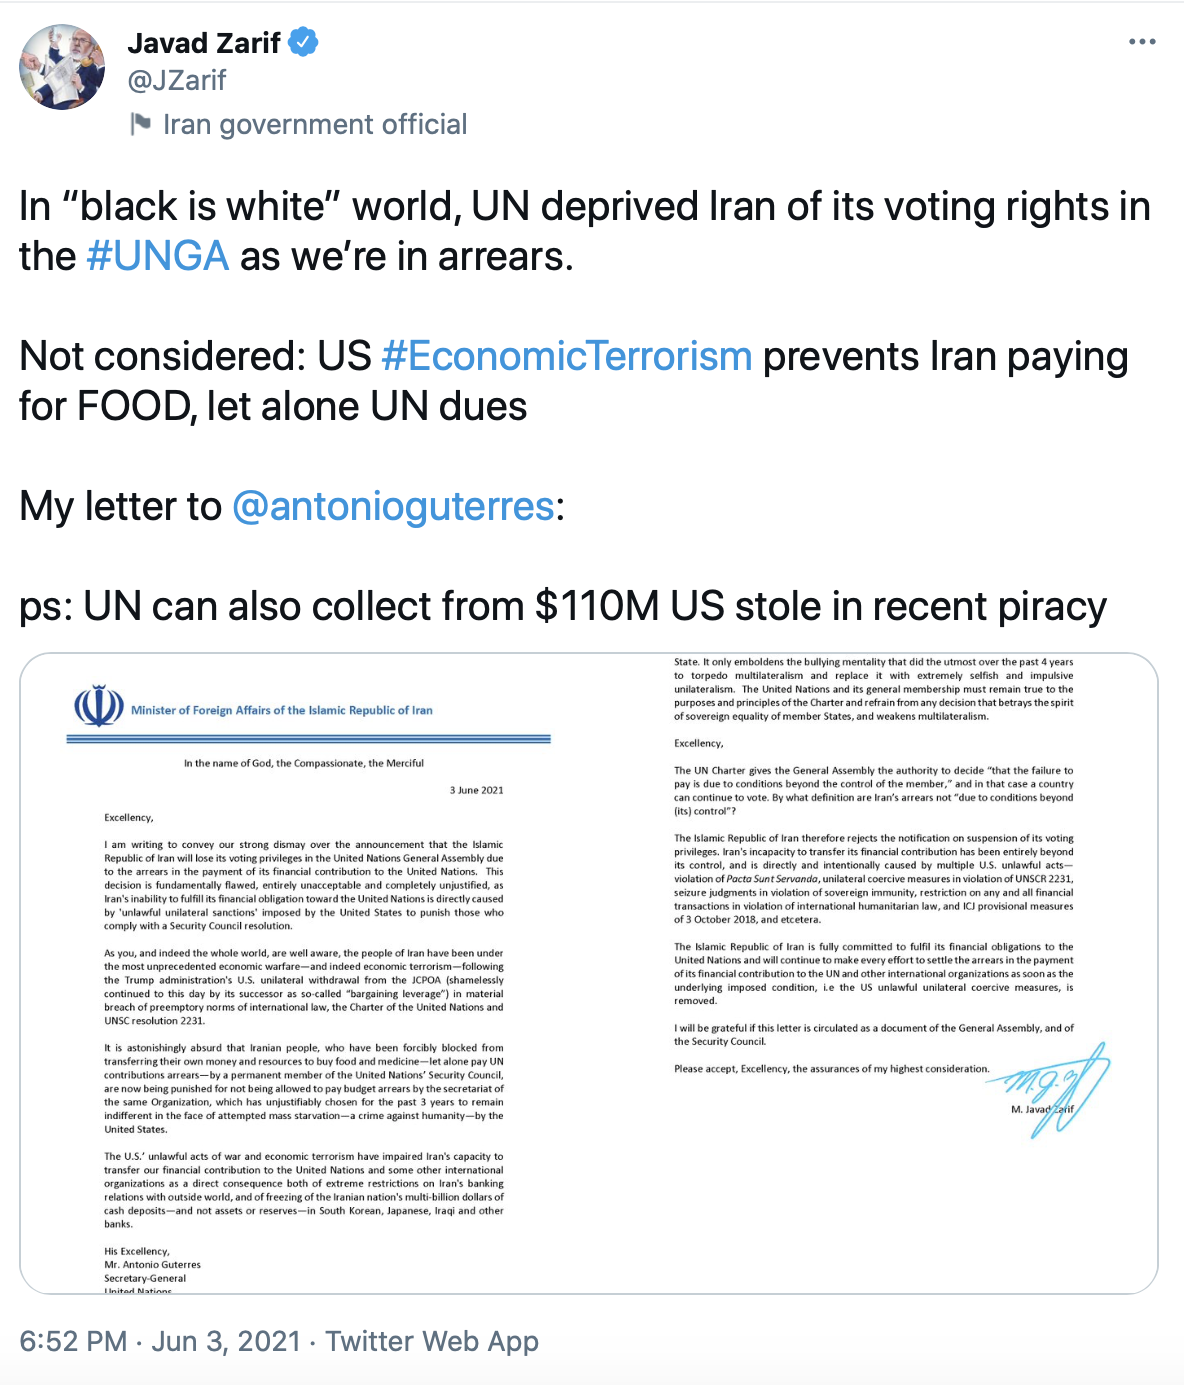 واکنش ظریف به معلق شدن حق رأی ایران در سازمان ملل 